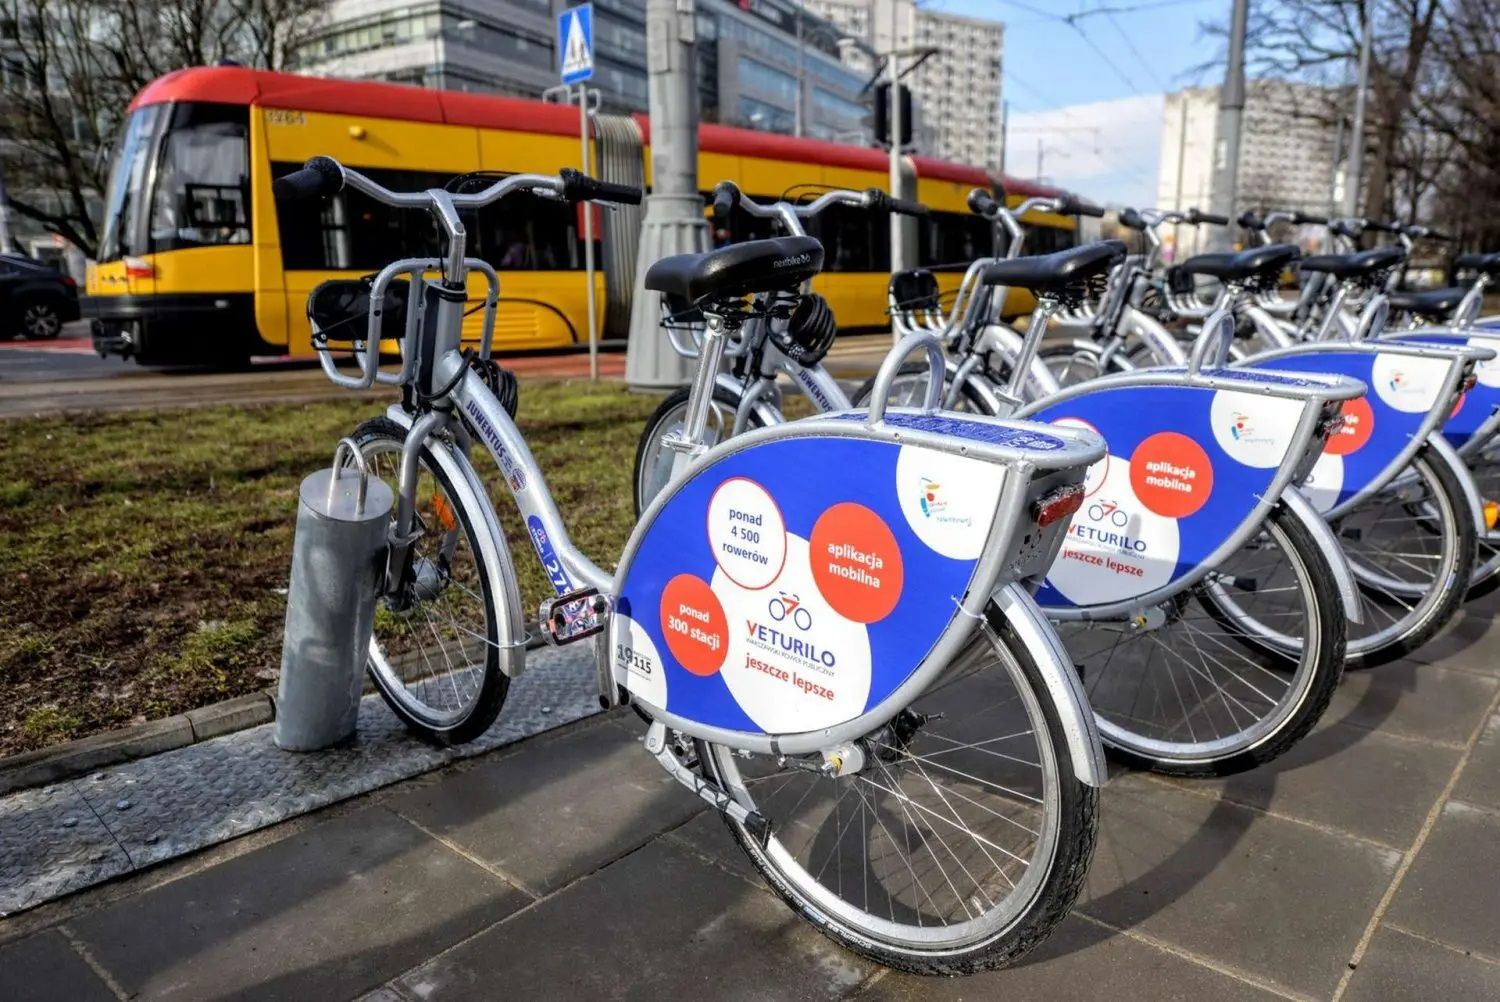 Новий оператор Veturilo у Варшаві  що зміниться для тих, хто орендує міські велосипеди - Закордон